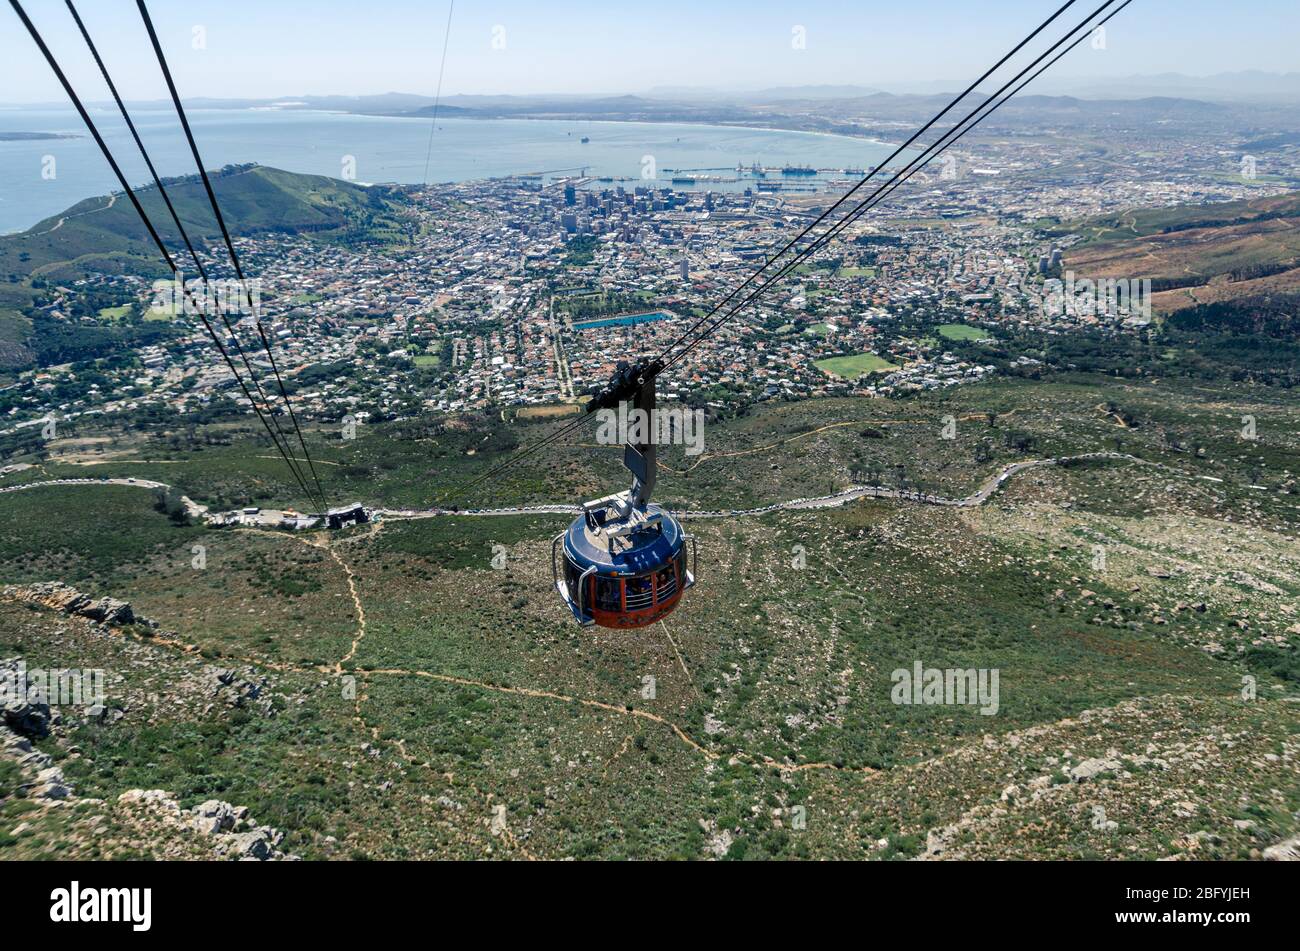 Drehbare Seilbahn zu Touristen Attraktion Table Mountain Kapstadt, Südafrika Stockfoto